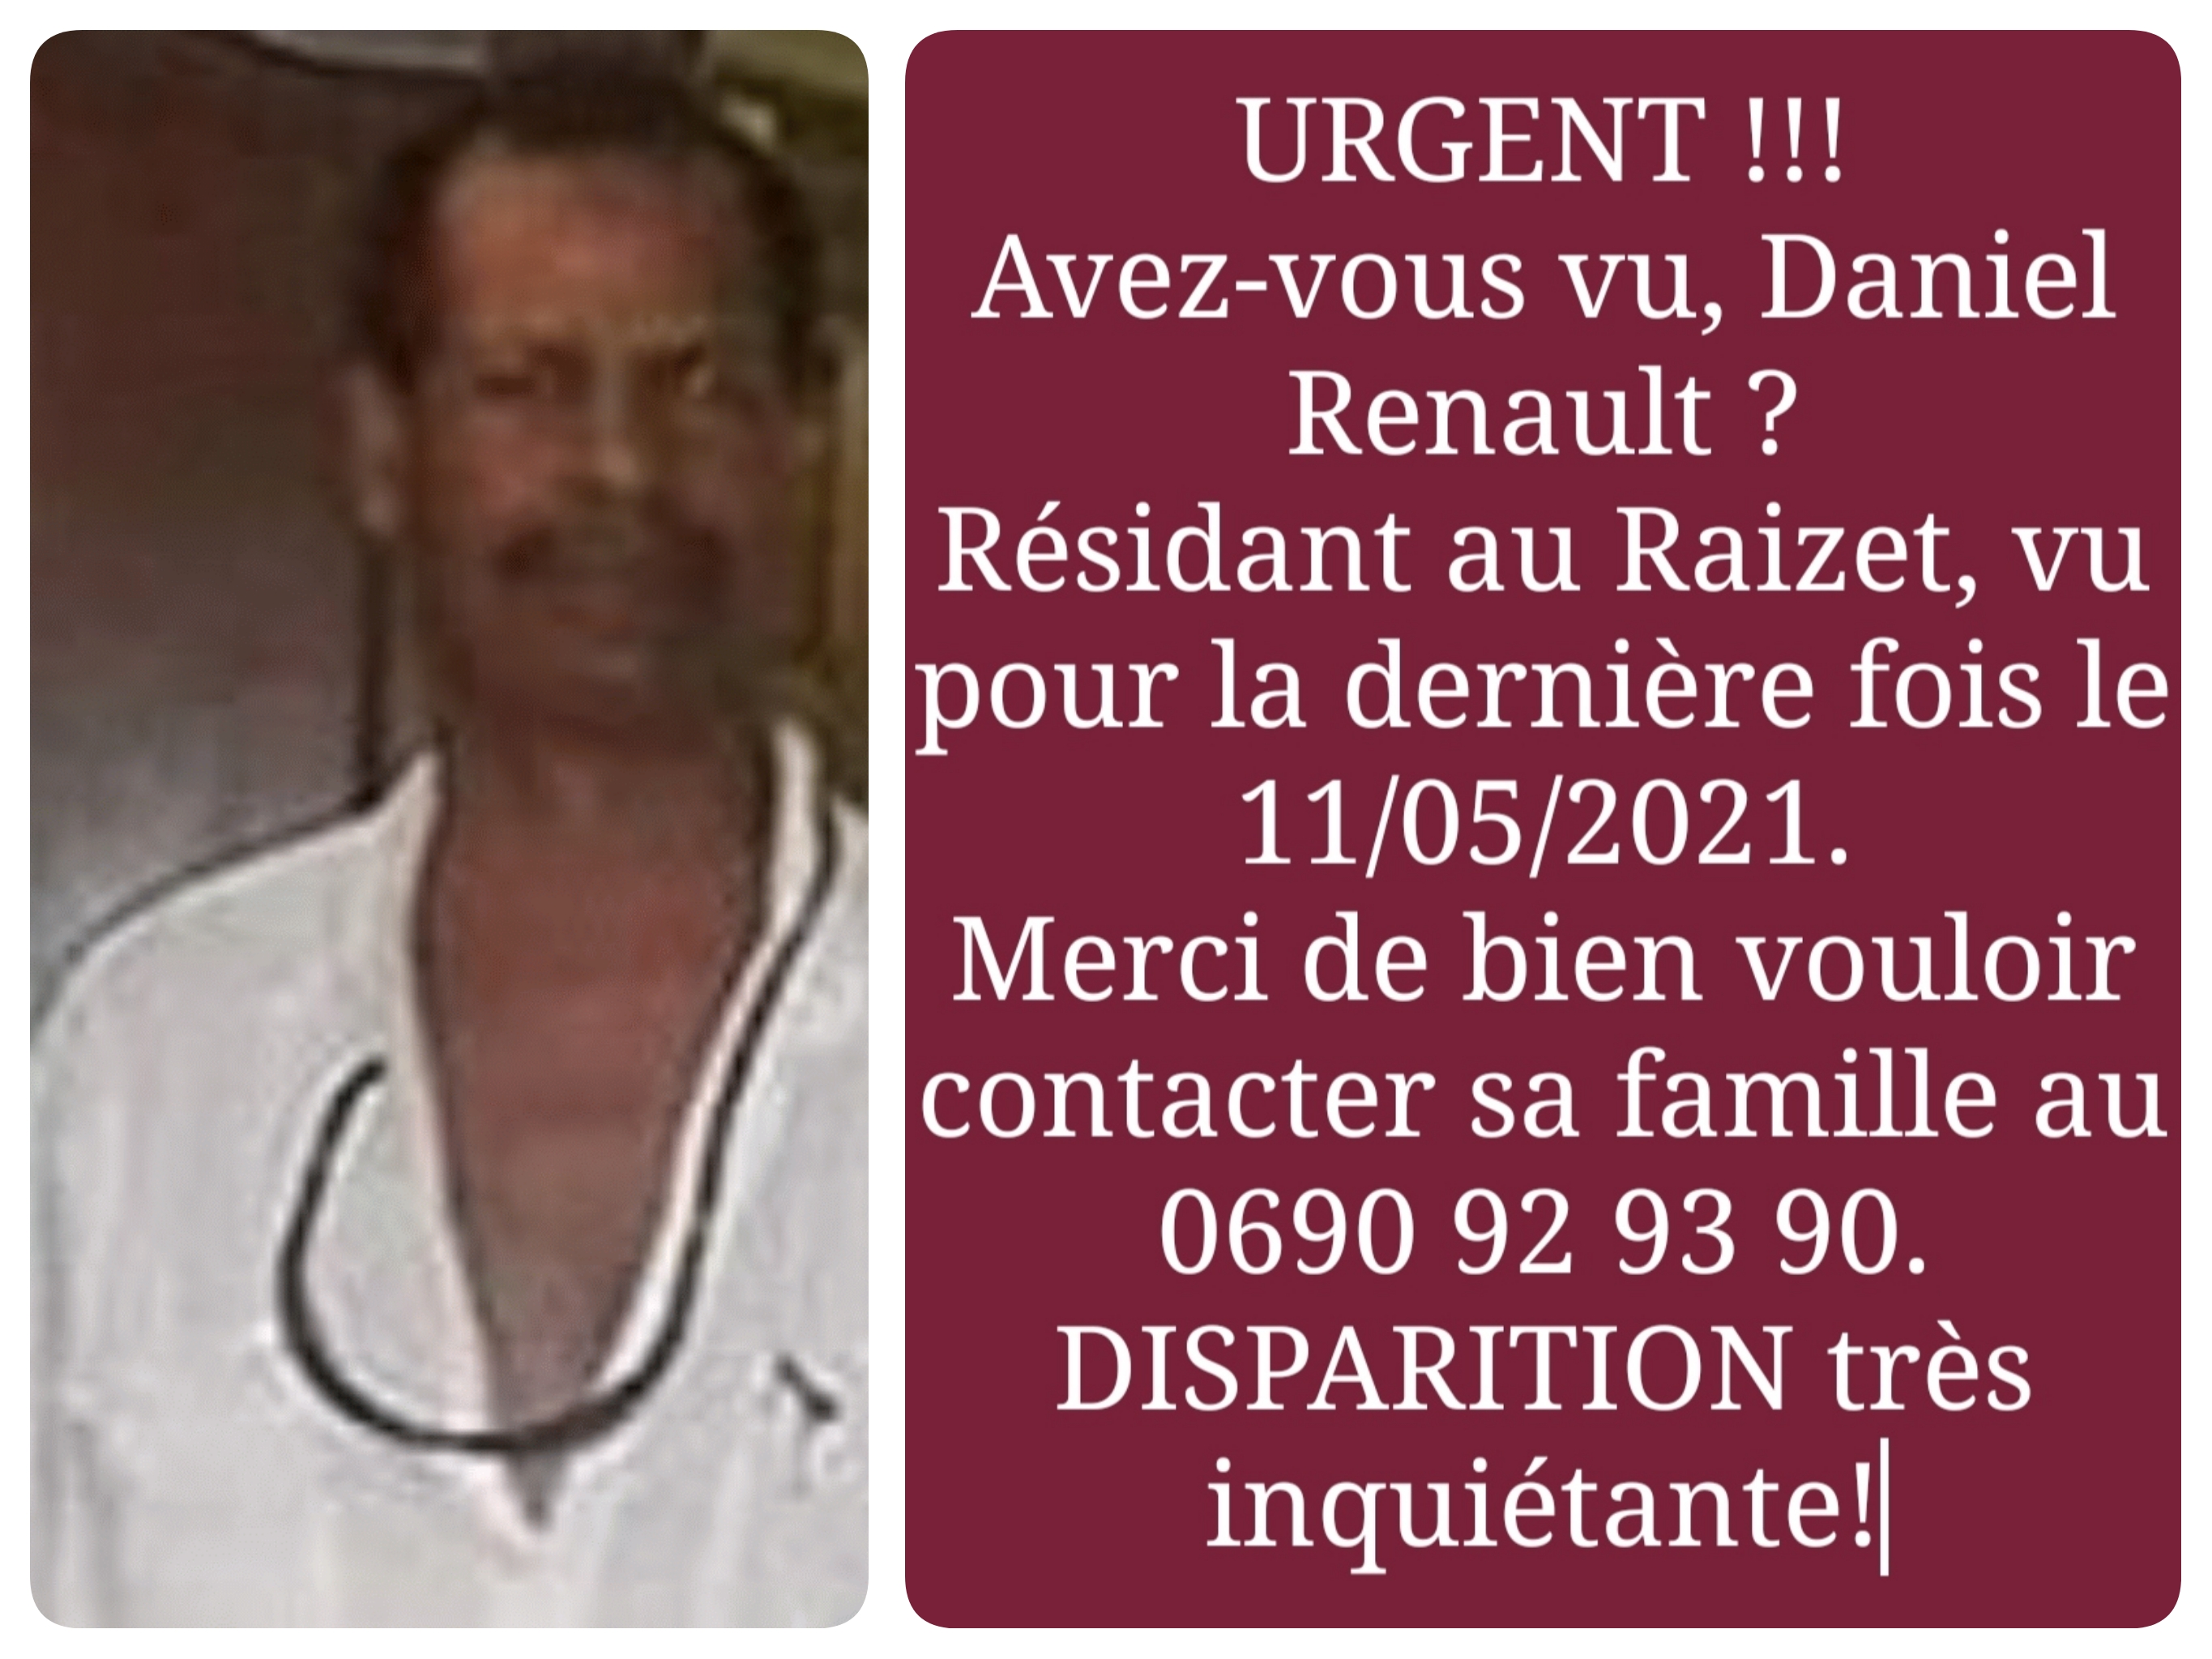     Avez-vous vu Daniel Renault, disparu au Raizet ?

